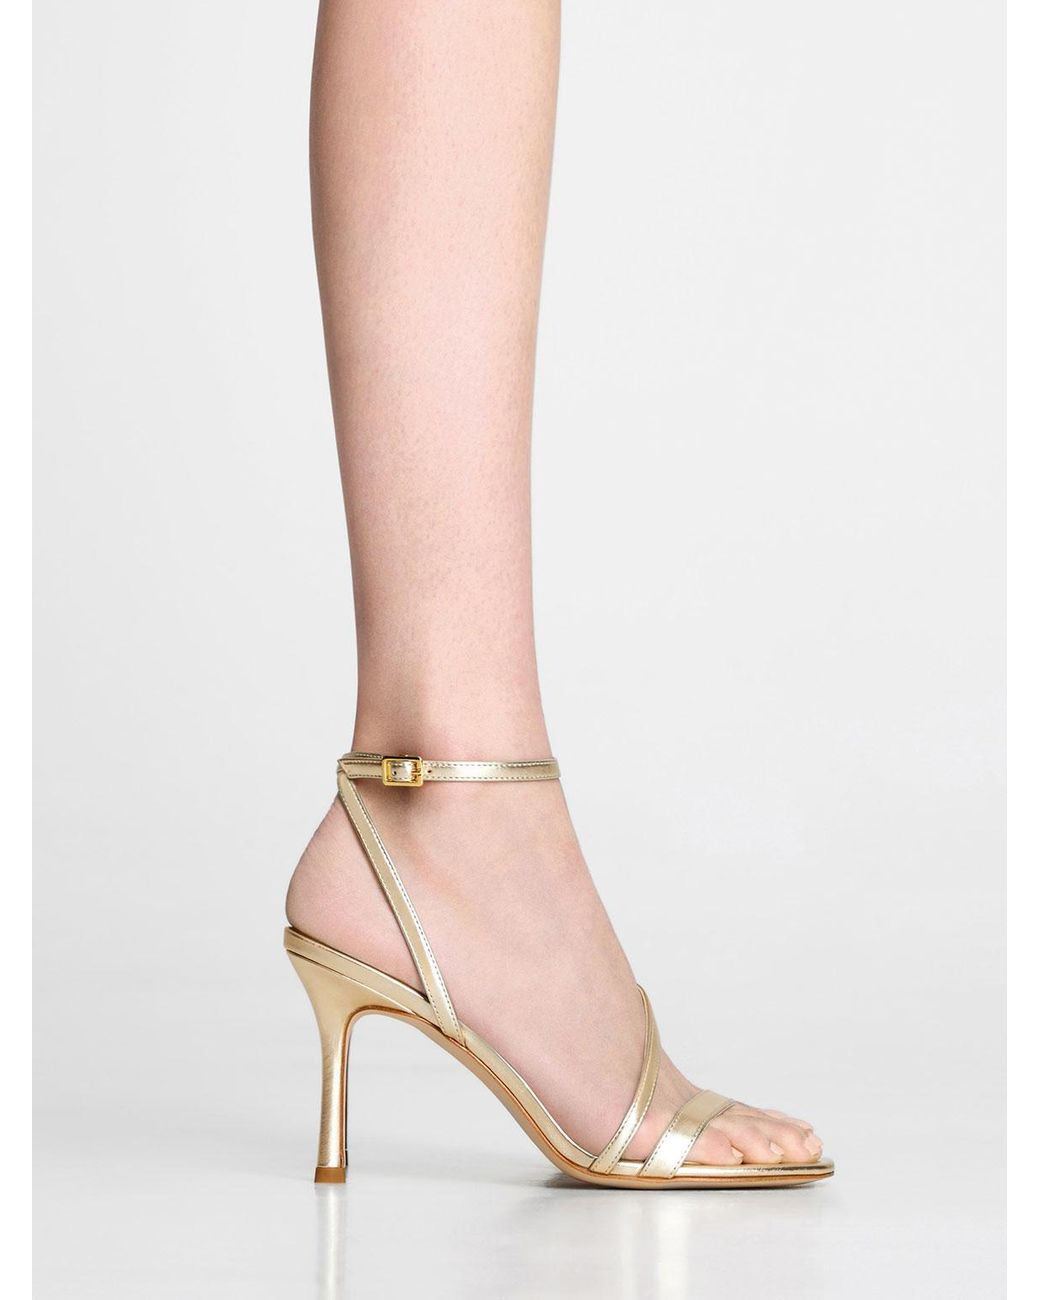 Buy Mochi Women Gold Casual Sandals Online | SKU: 40-2441-15-36 – Mochi  Shoes